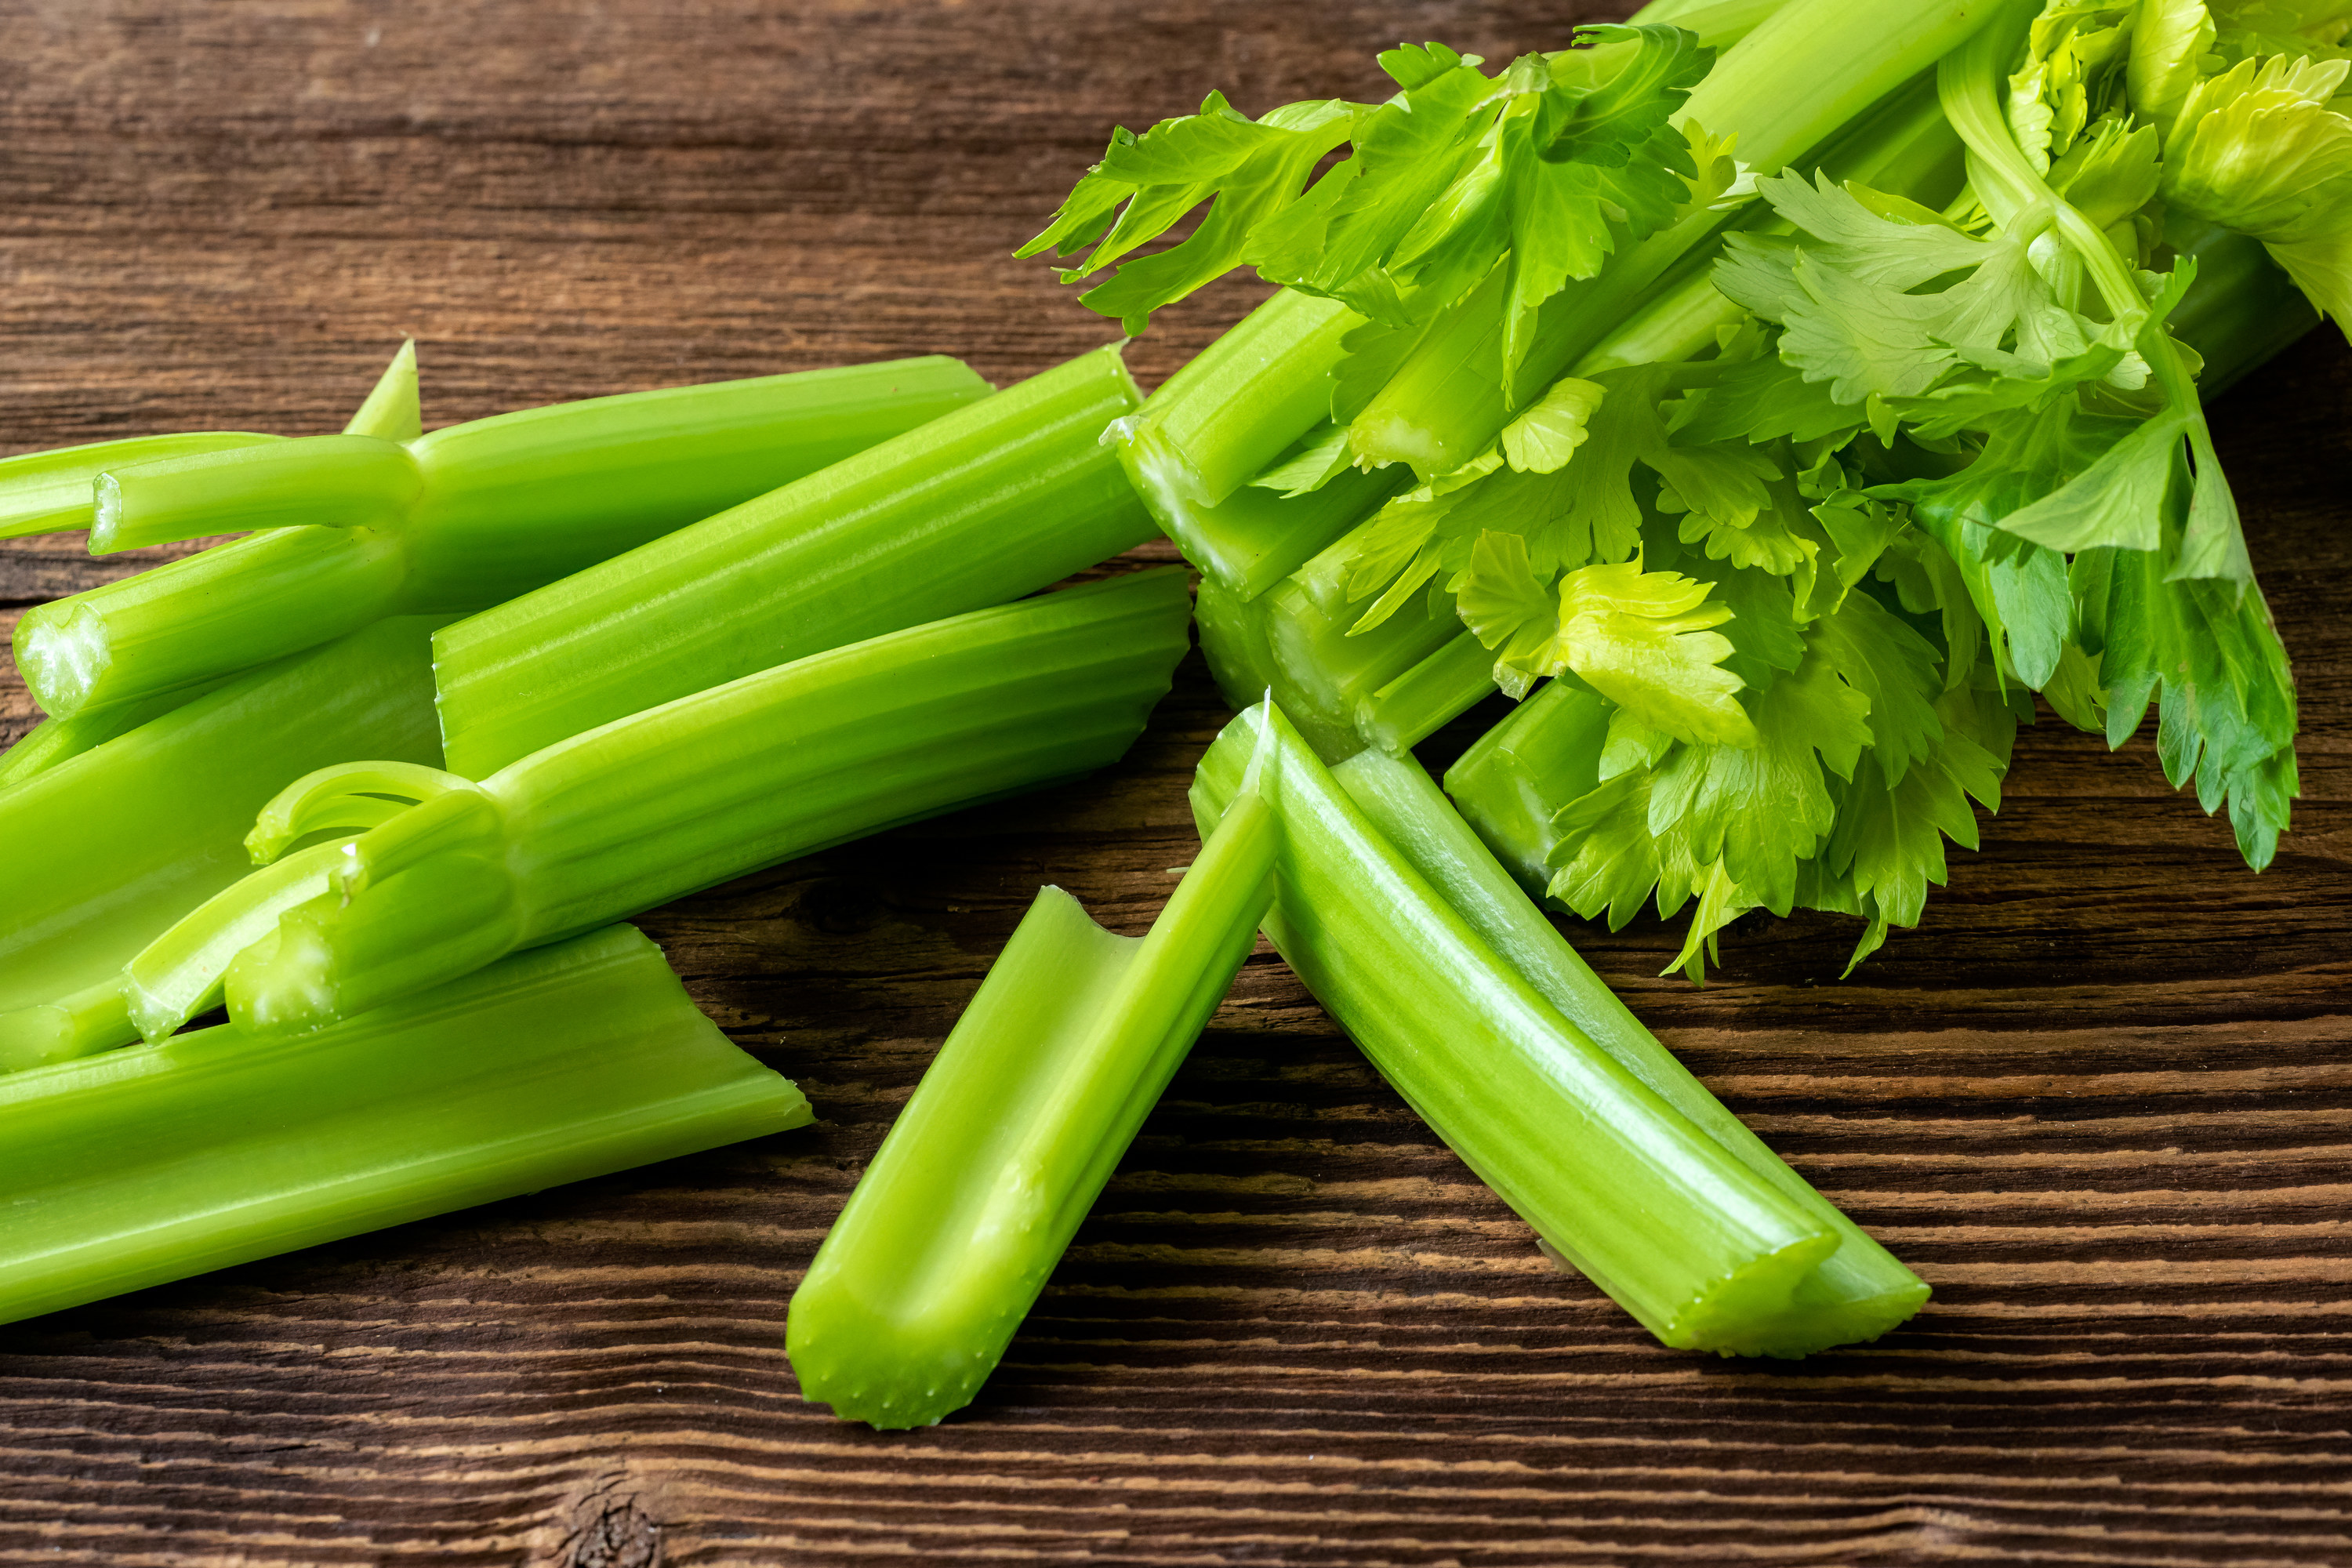 cut celery sticks